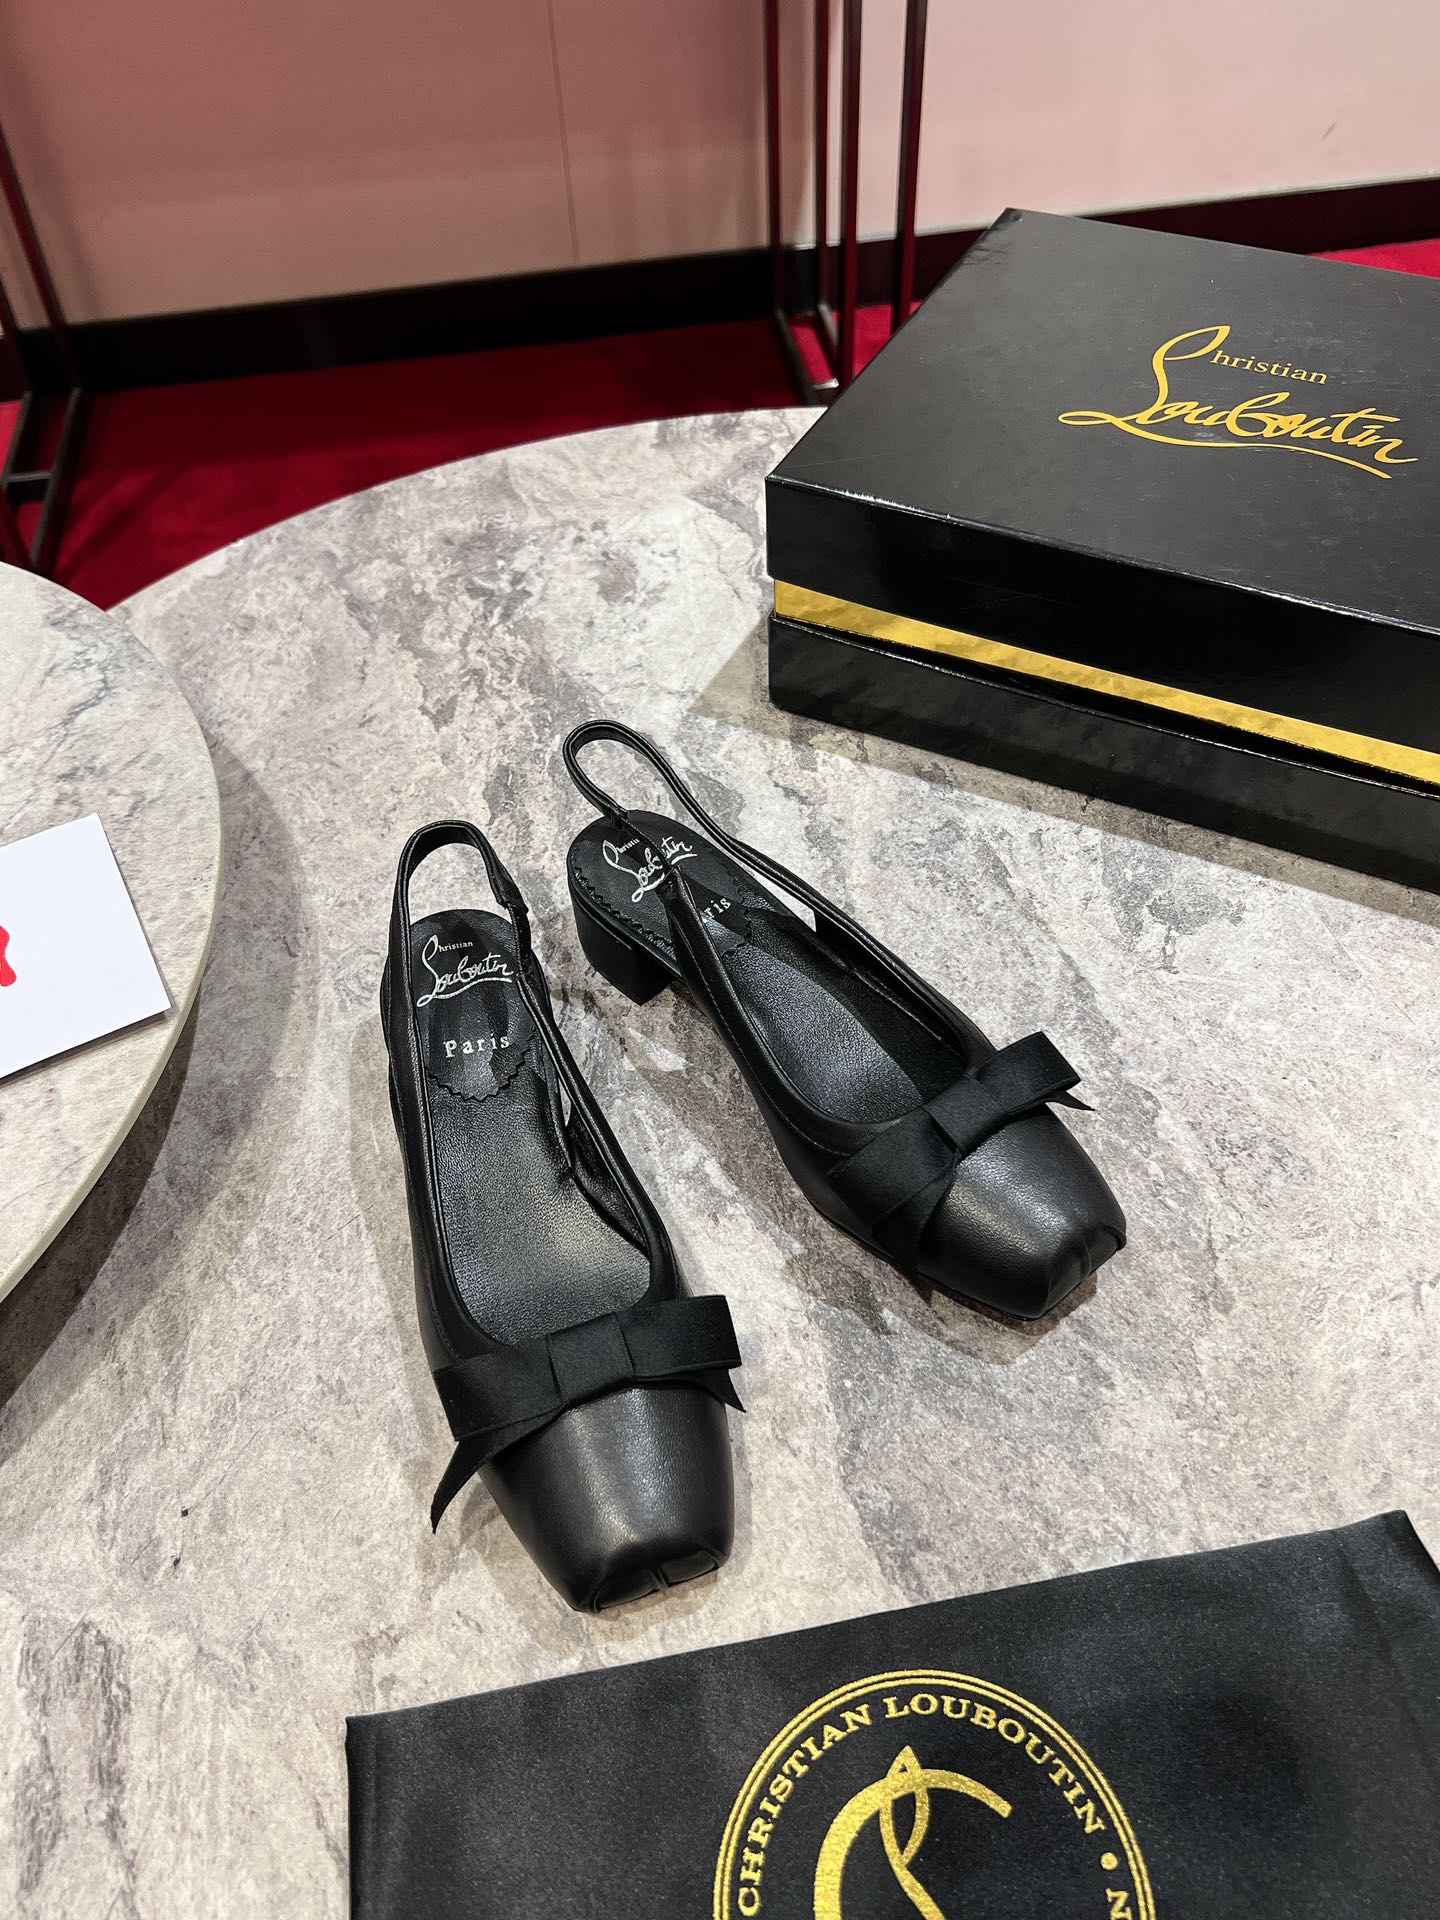 ????❥∙ 芭蕾舞鞋????✪∙ꫛꫀw.✔︎ \n????️zbdbs\n永恒的Mamaflirt吊带泵以其优雅的吸引力而魅力四射。这款Maison Christian Louboutin高跟鞋采用黑色皮革制作而成，鞋跟为30毫米，露出脚背。这款鞋的特点是低胸鞋面，方头鞋头和鞋面上的蝴蝶结，给人优雅的感觉。\n\nsize：35码-43码\n（40.41.42.43.定做不退不换。‼️43.码➕10）\n颜色：黑 米 黄\n大底：真皮大底\n跟高：3cm